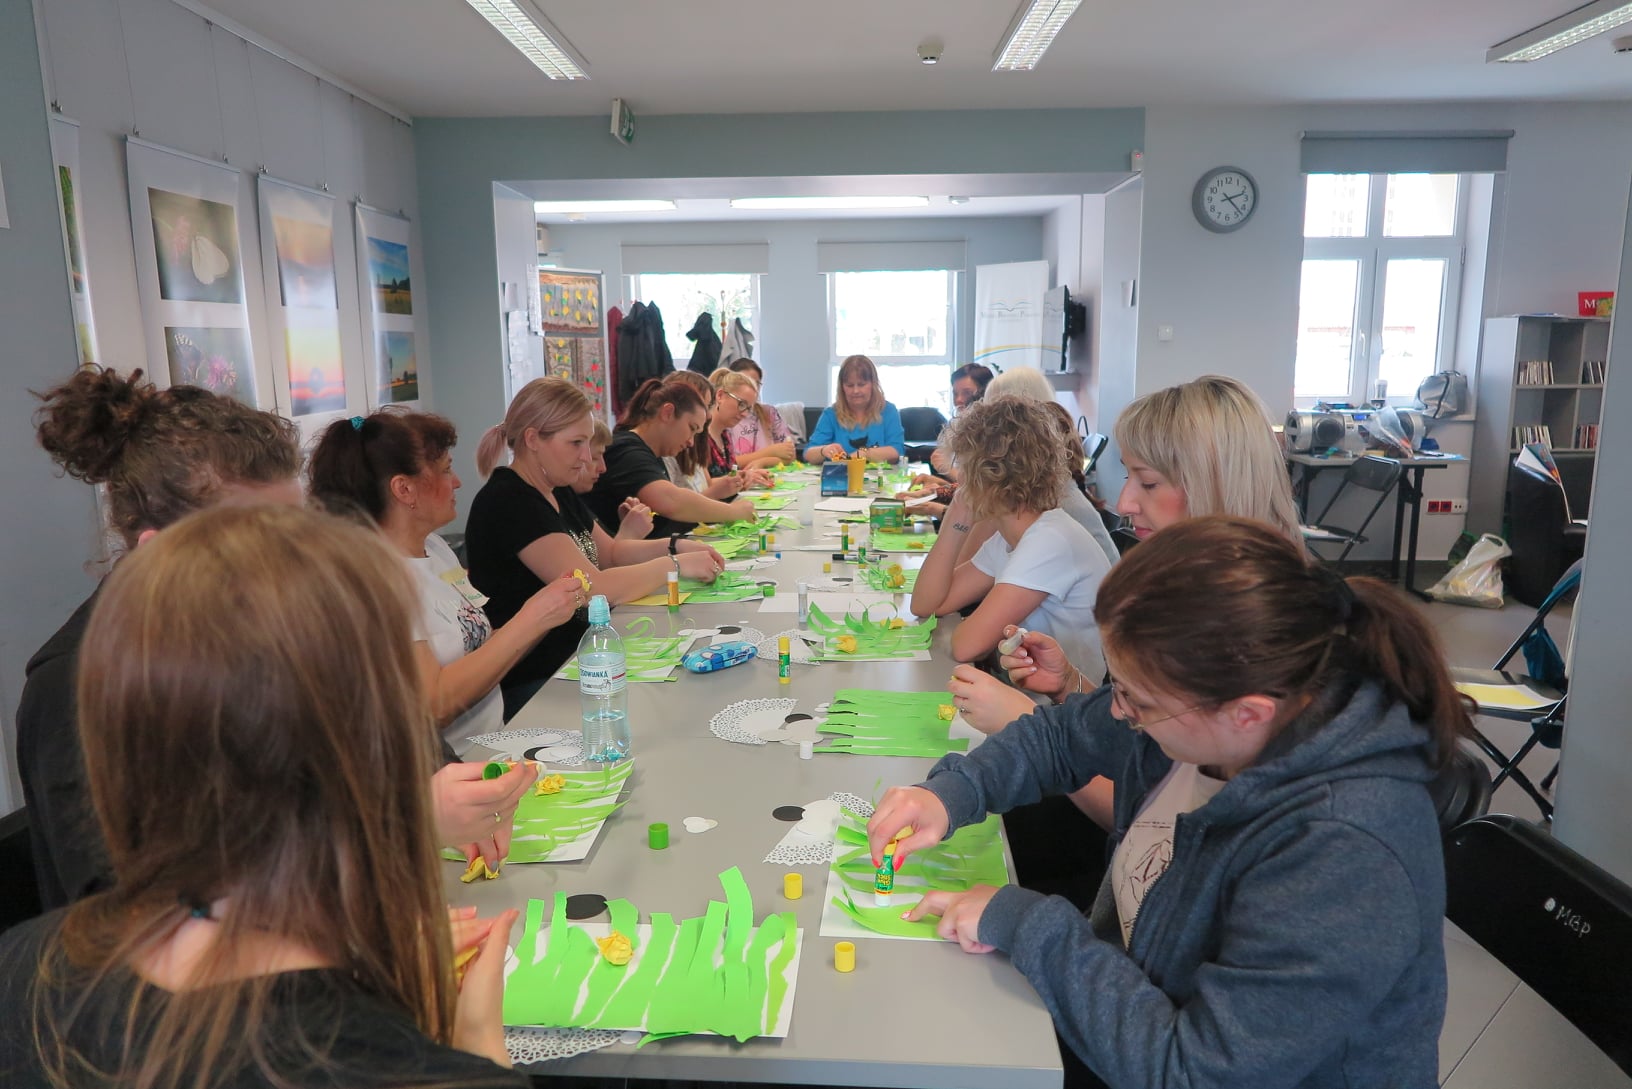 grupa kobiet siedzi przy długim stoliku i wyklejają z zielonego papieru pracę plastyczną